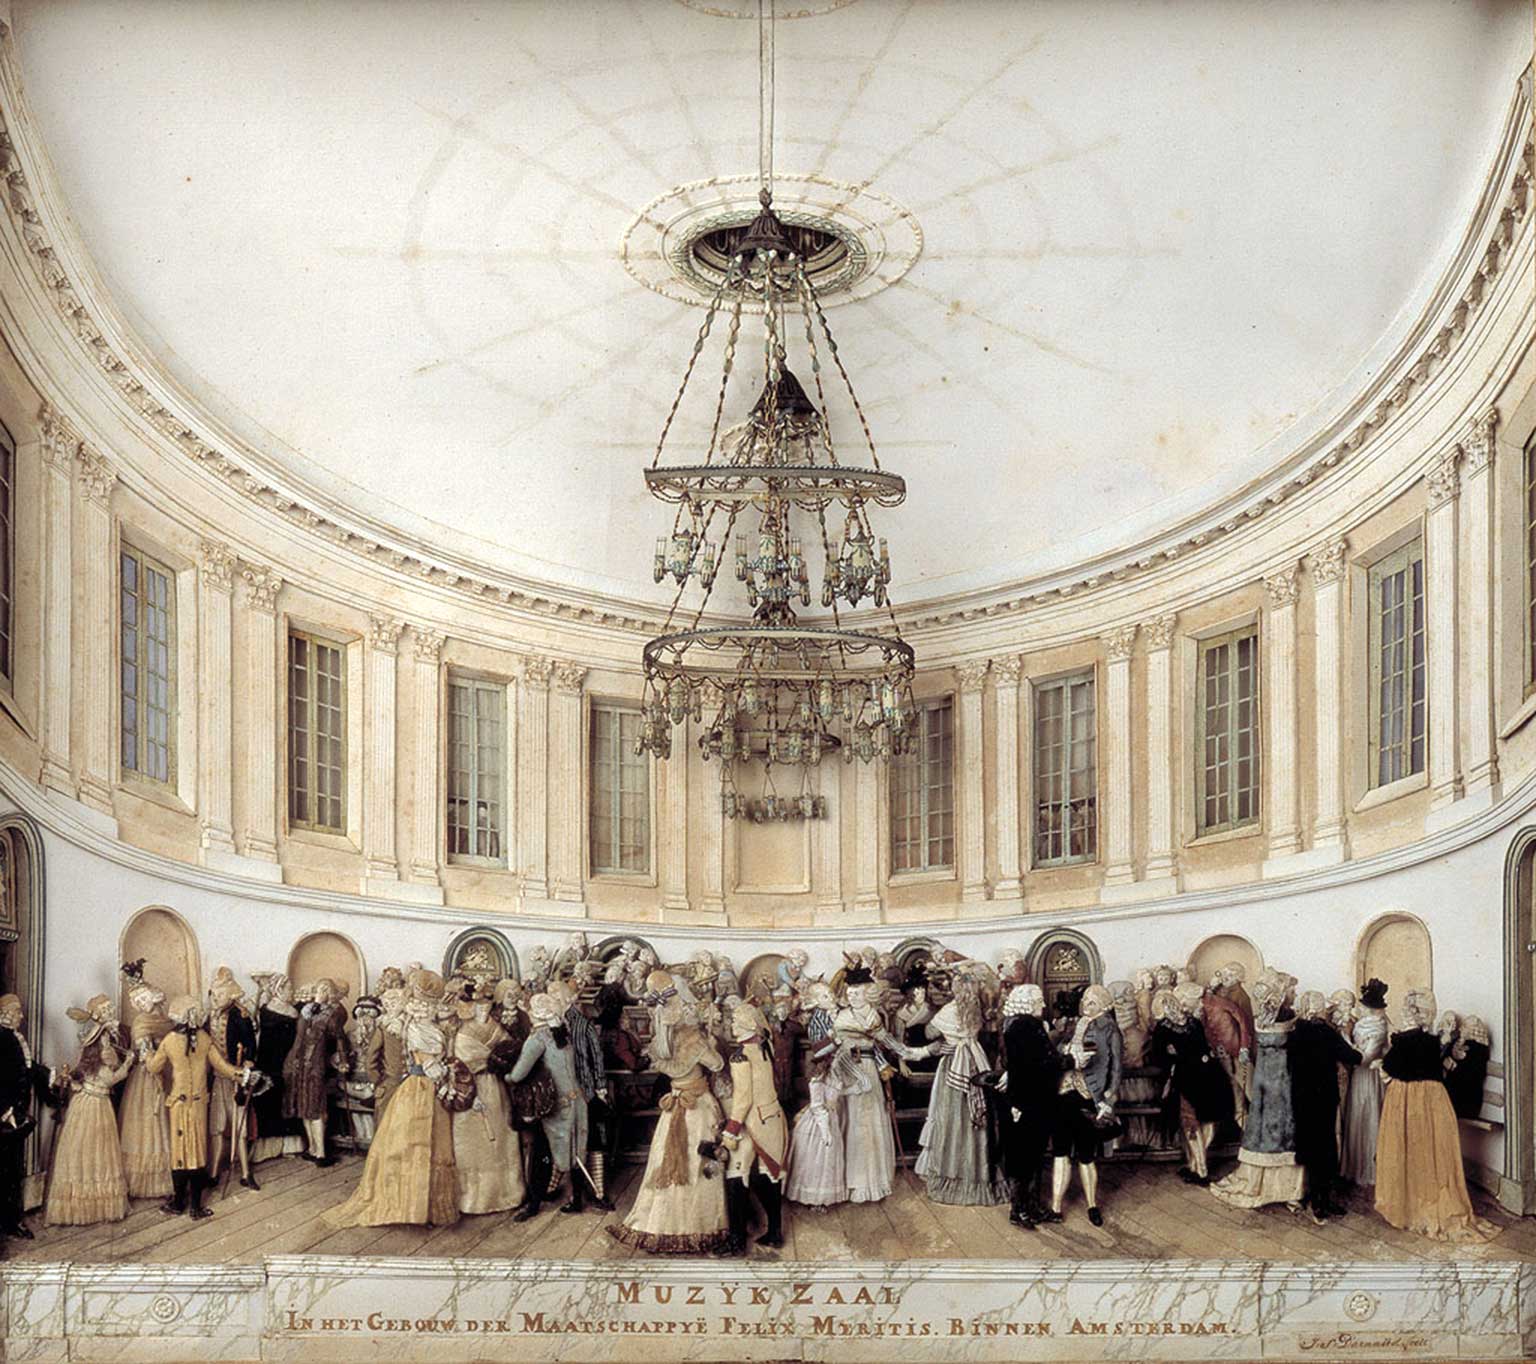 De Bavelaar Muziekzaal in Felix Meritis, Amsterdam, knipselwerk uit 1781-1801